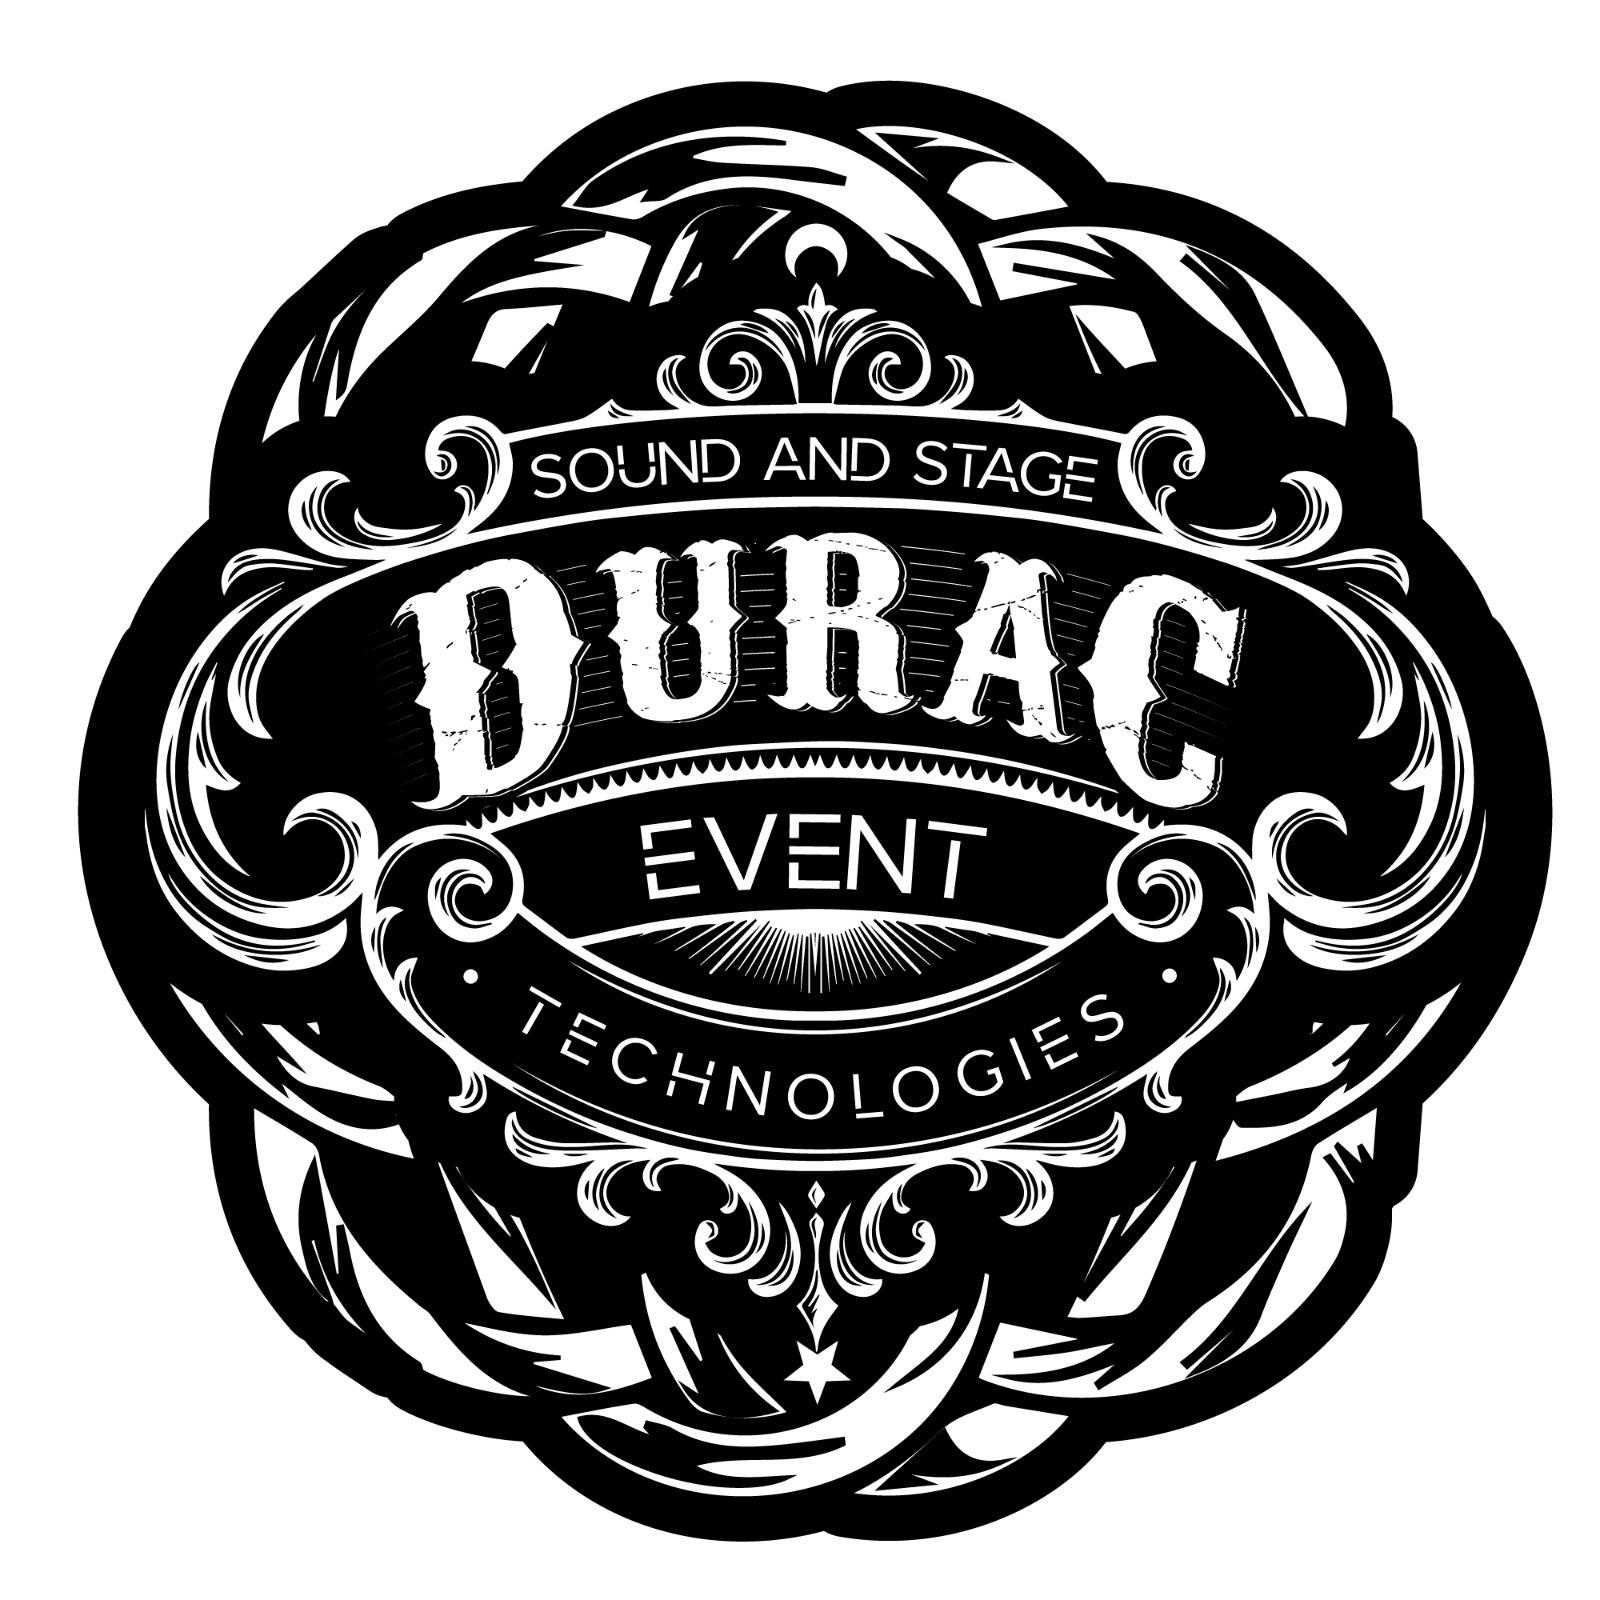 DURAC EVENT TECHNOLOGİES etkinlik ve sahne teknolojileri Logo